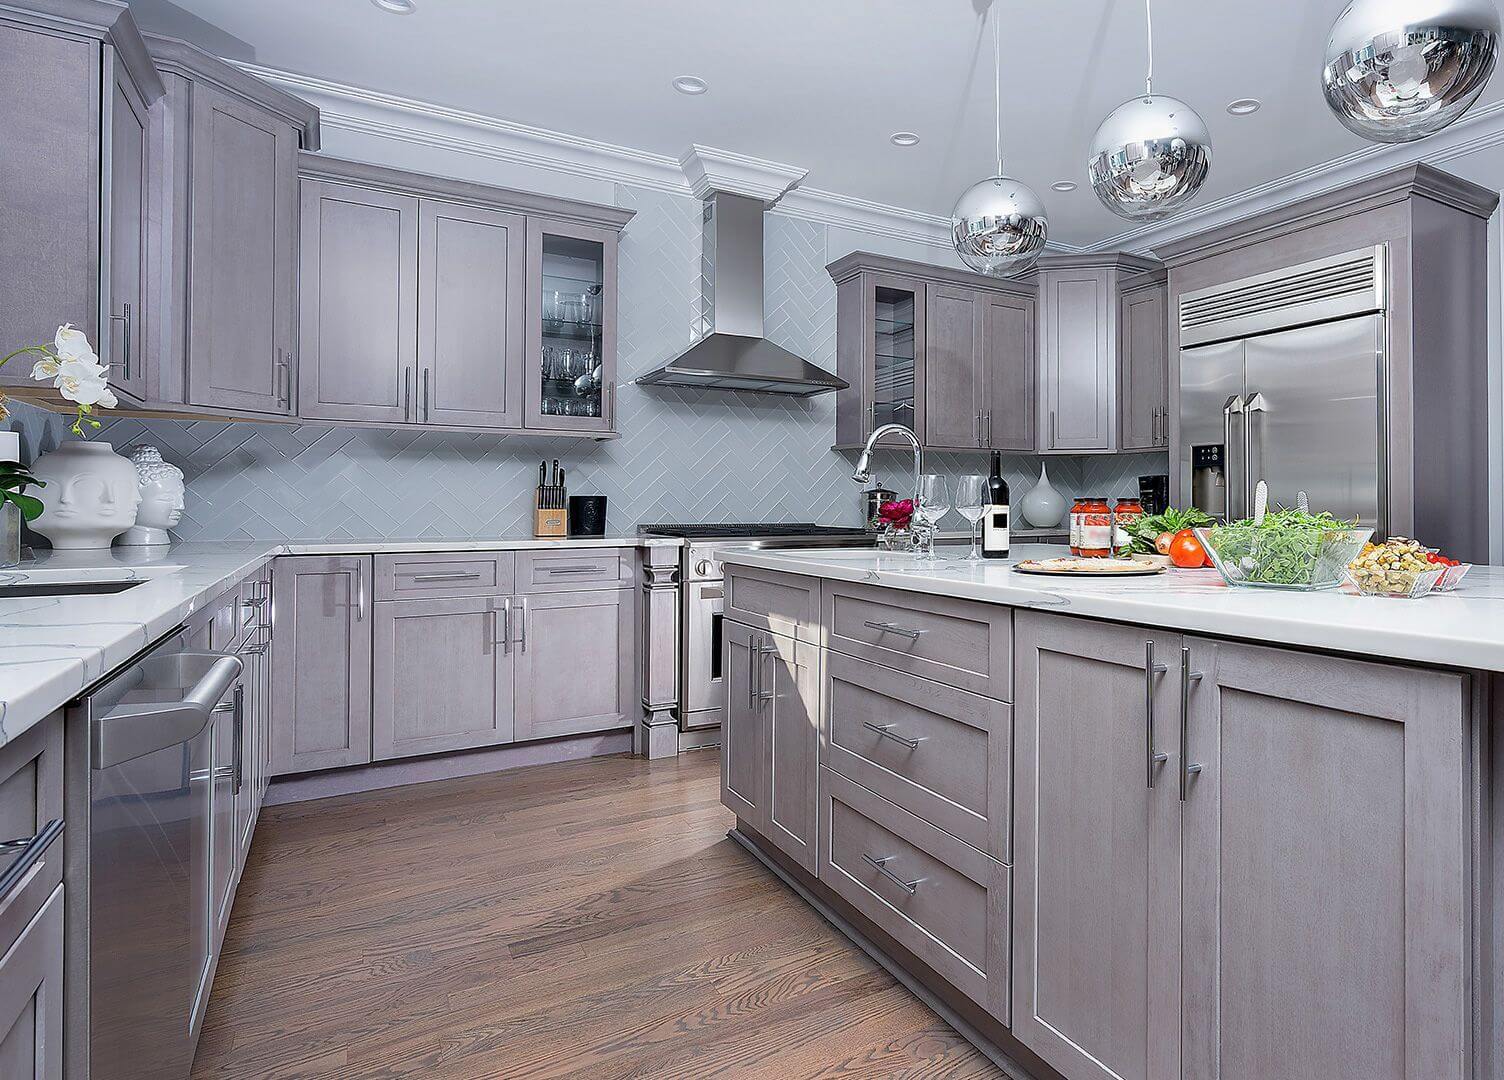 New kitchen featuring Fabuwood Galaxy Horizon shaker gray kitchen cabinets